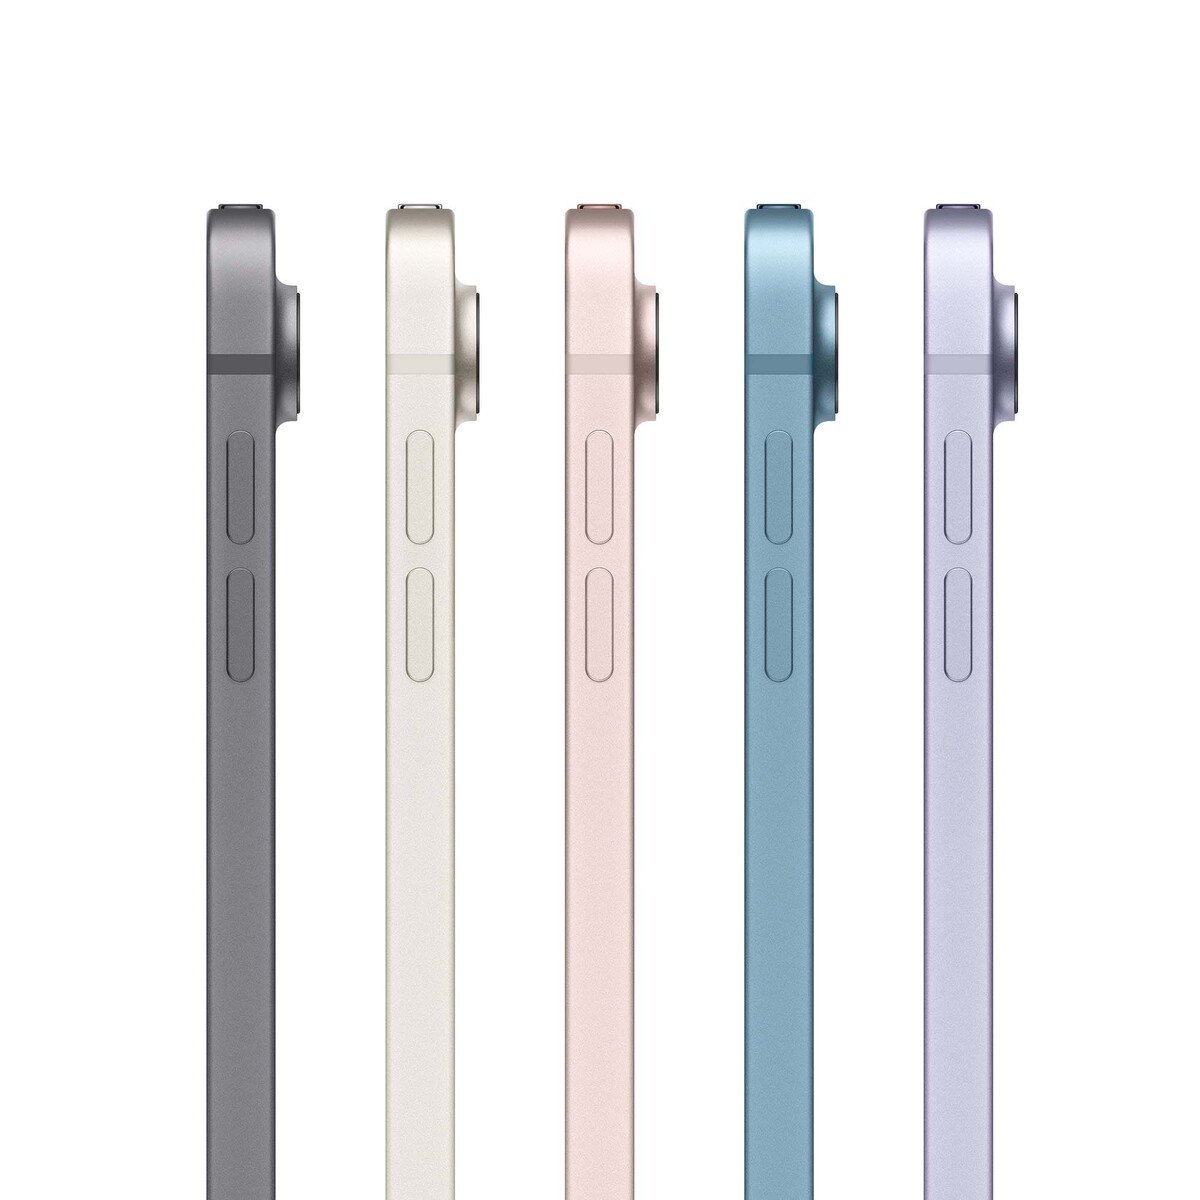 Apple iPad Air (2022) 10.9-inchch Wi-Fi + Cellular(5G) 256GB Blue